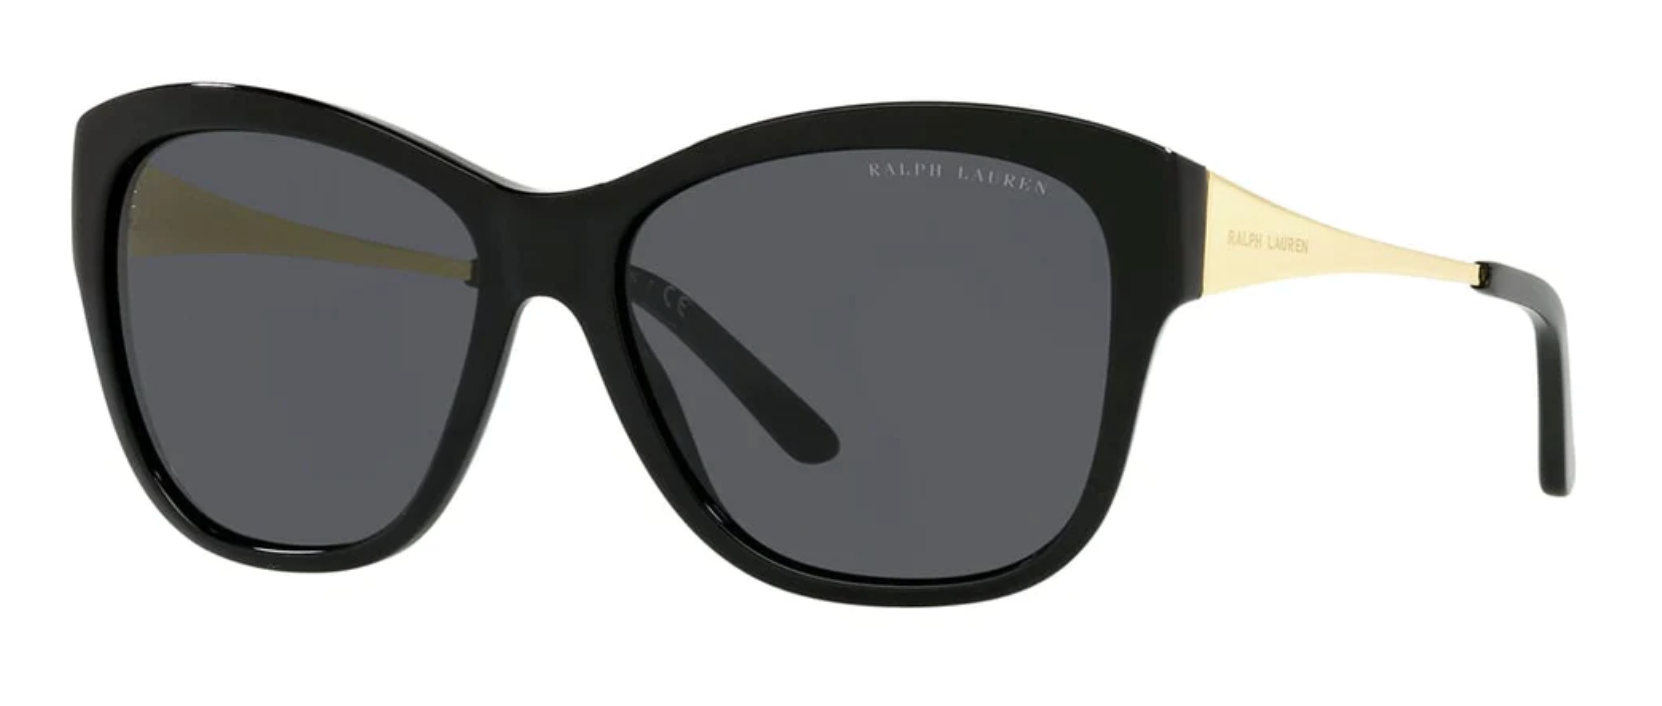 Ralph Lauren Women's Sunglasses Oversized Butterfly Black RL8187 500187